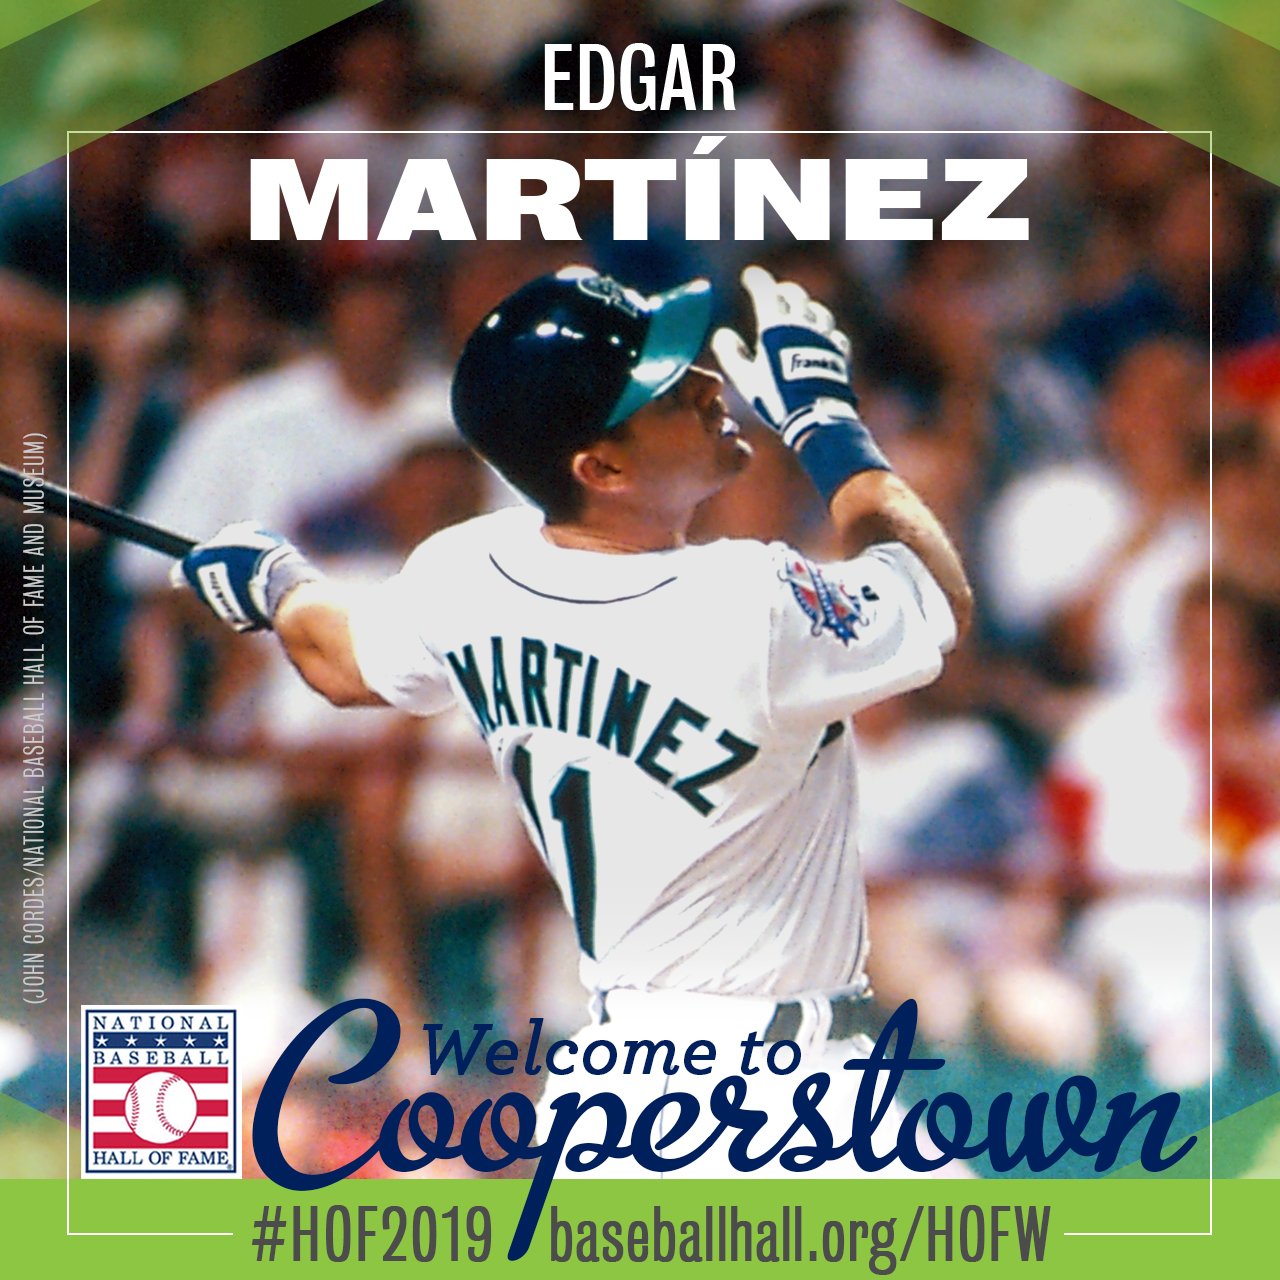 Edgar Martínez: Headed to Cooperstown